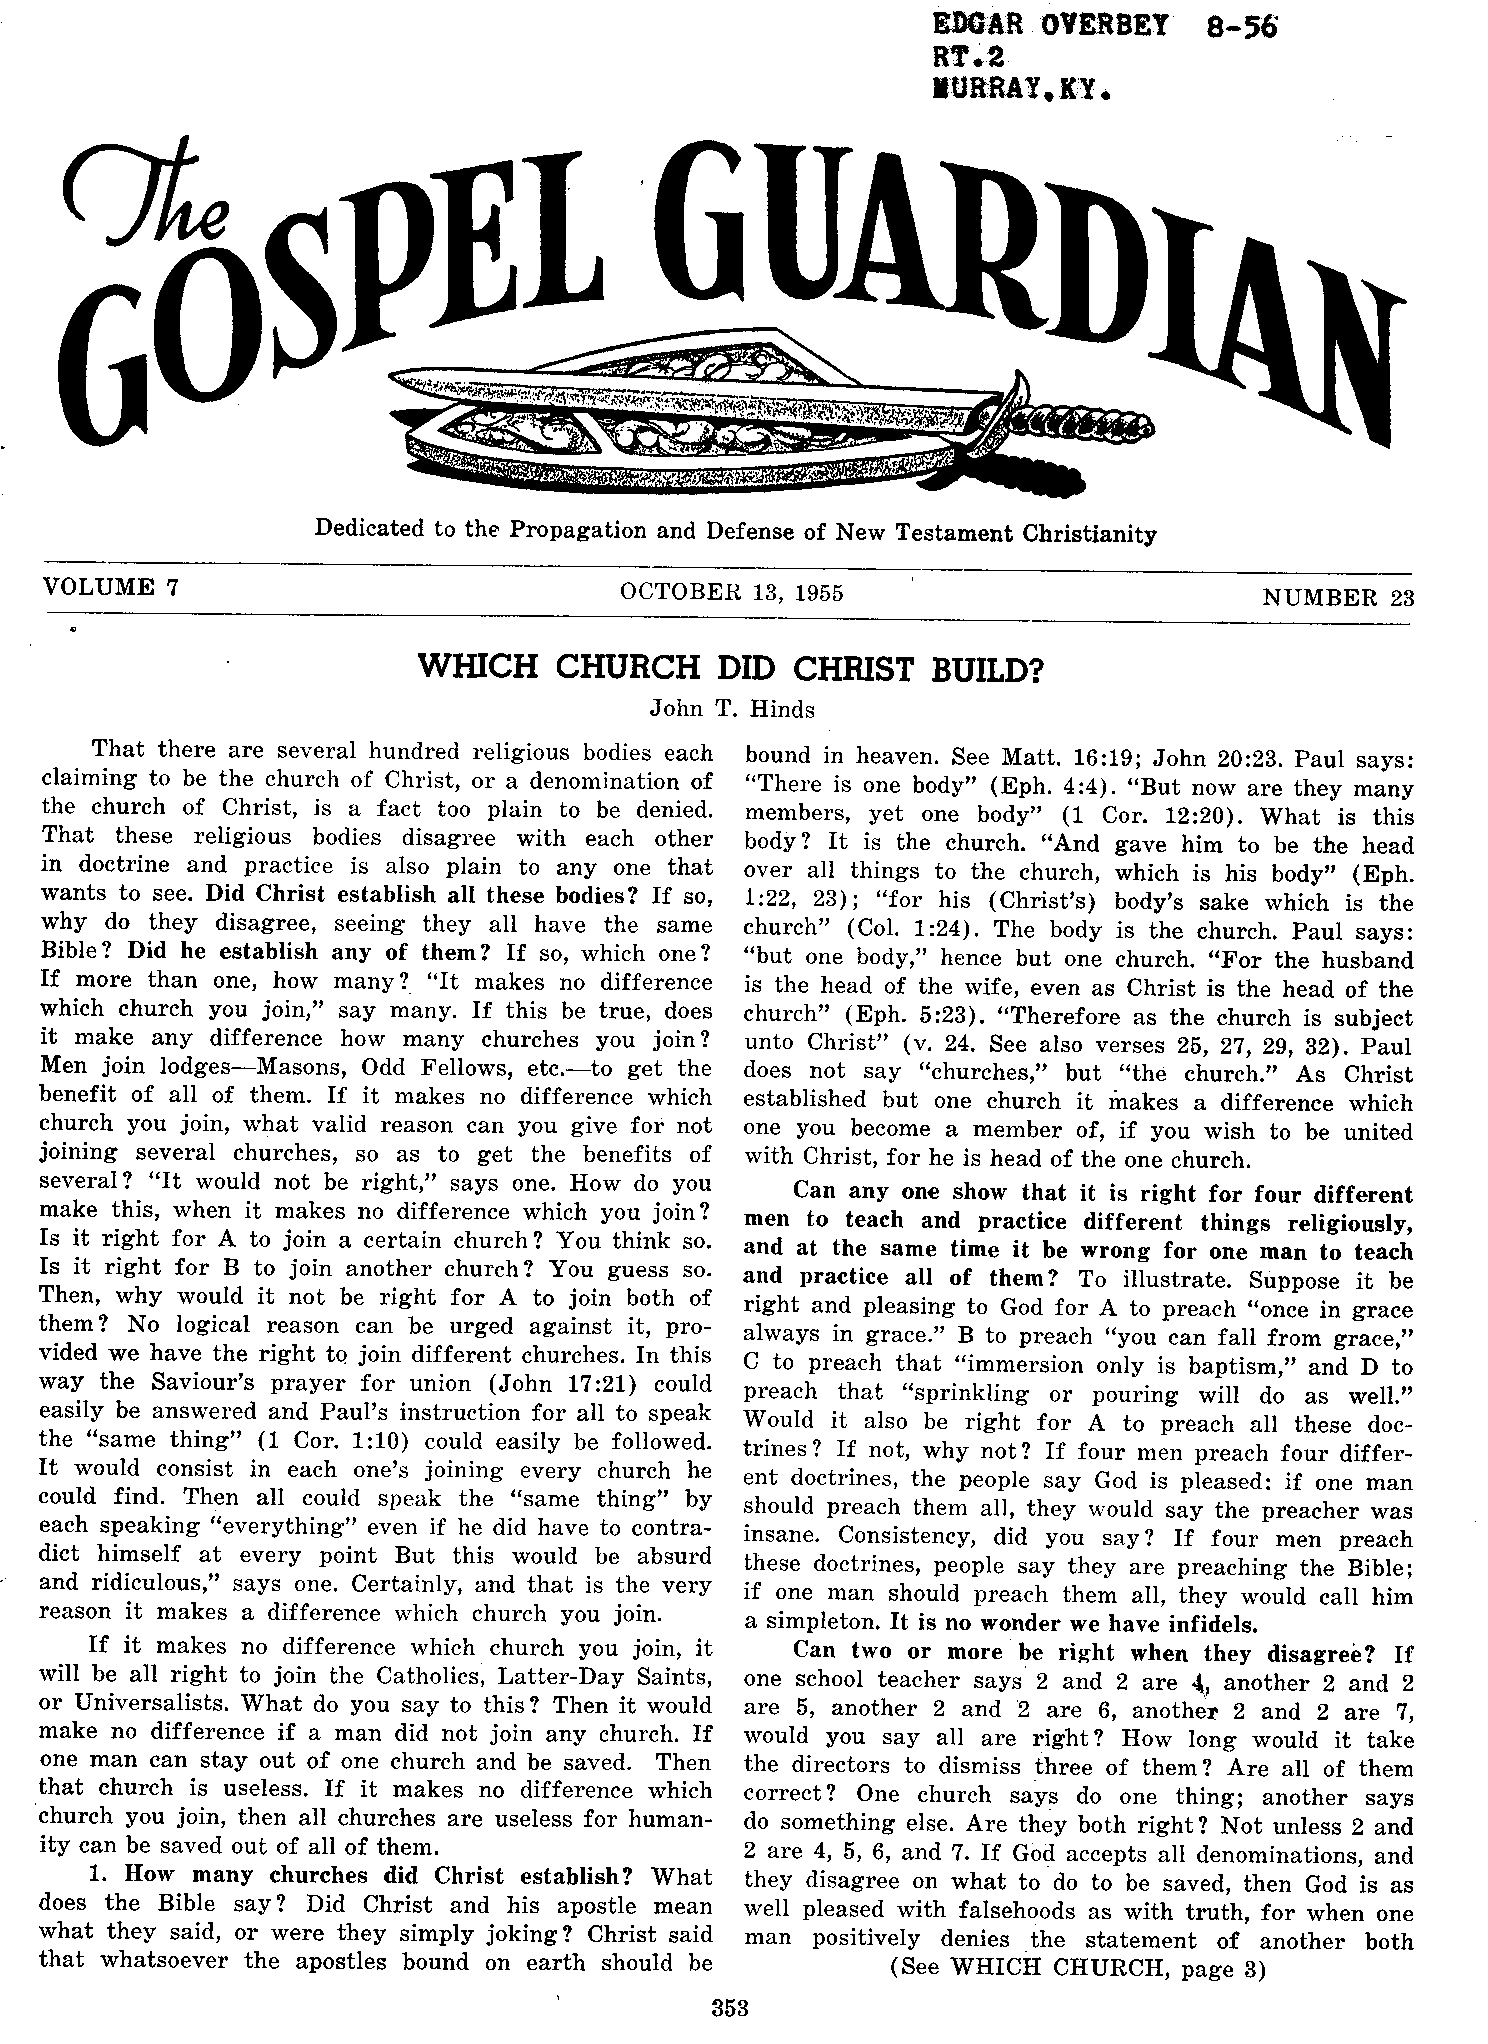 Gospel Guardian Original: Vol.7 No.23 Pg.1